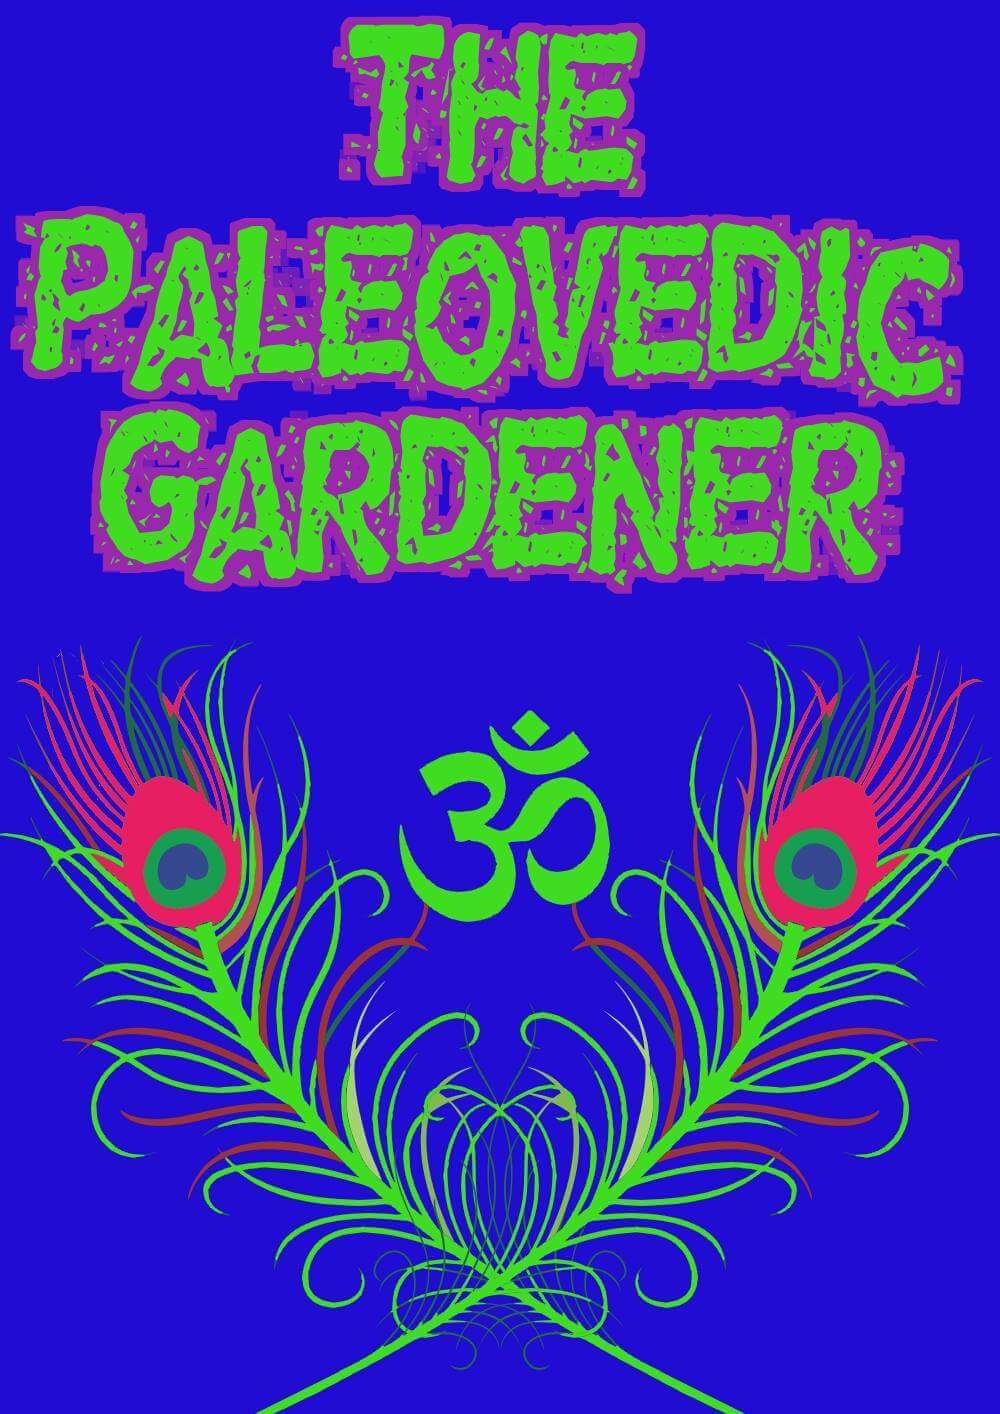 The paleovedic gardener 